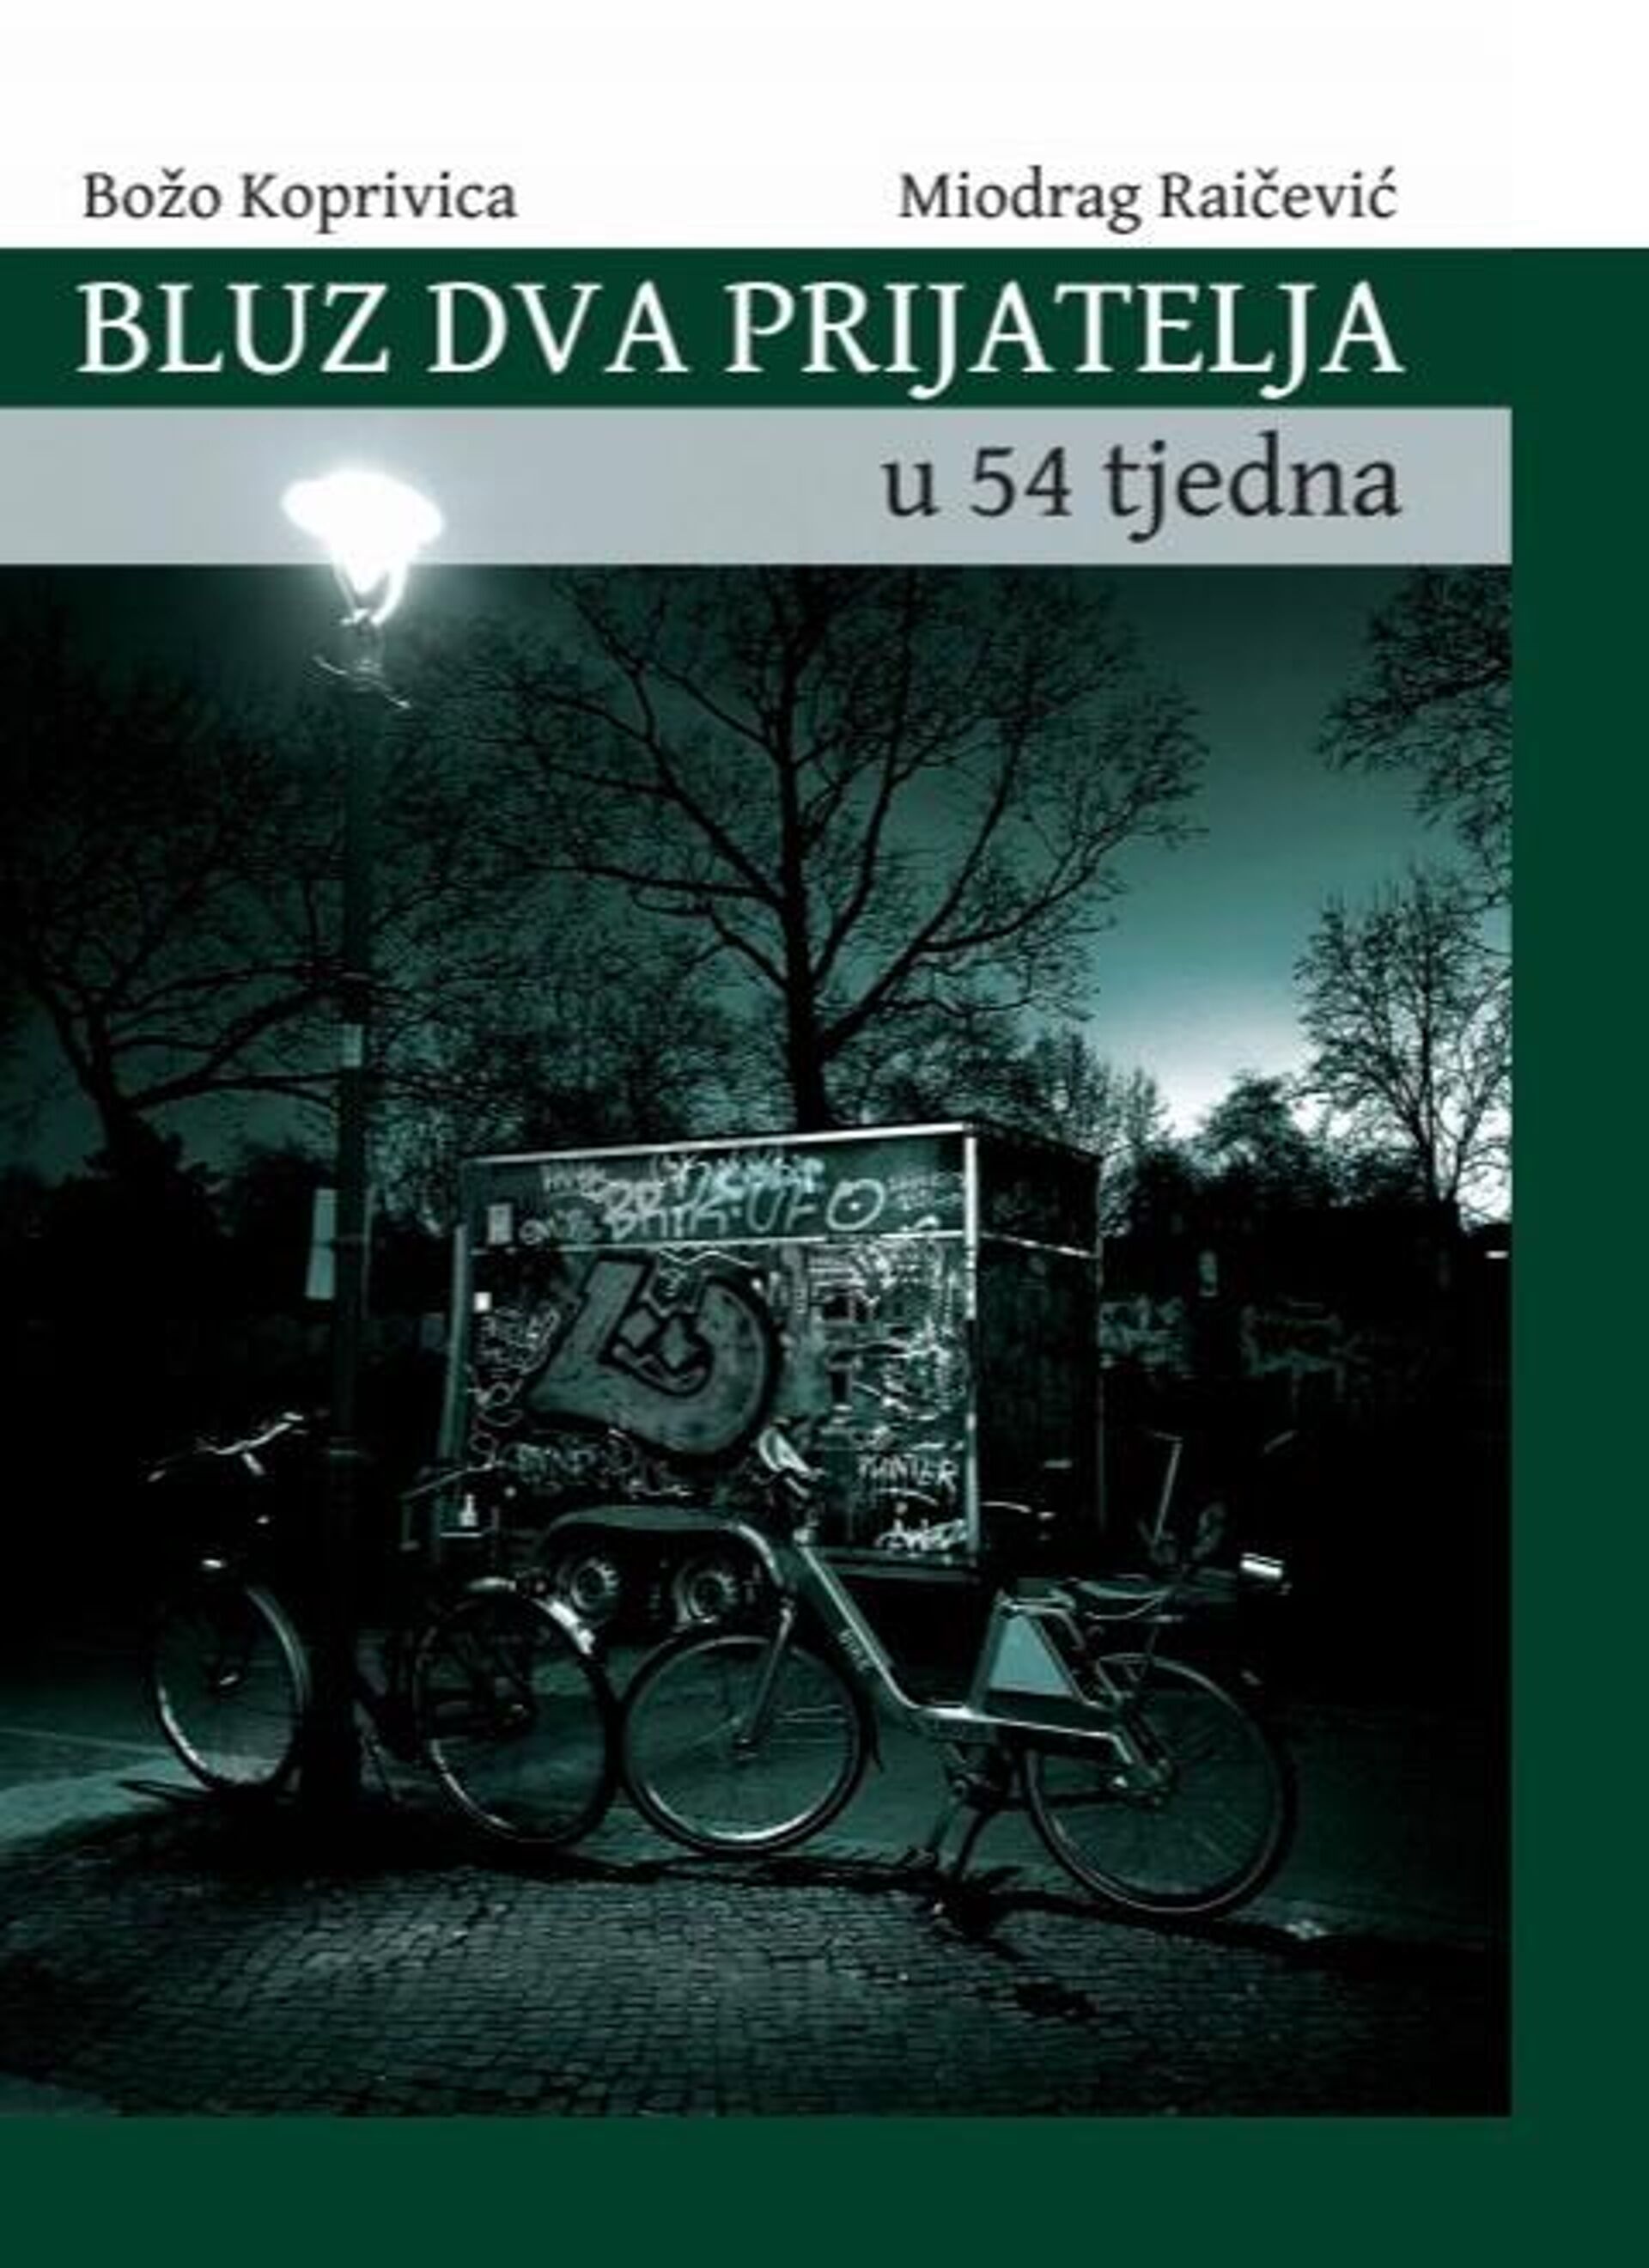 Naslovnica knjige Bluz dva prijatelja u 54 tjedna - Sputnik Srbija, 1920, 08.07.2022